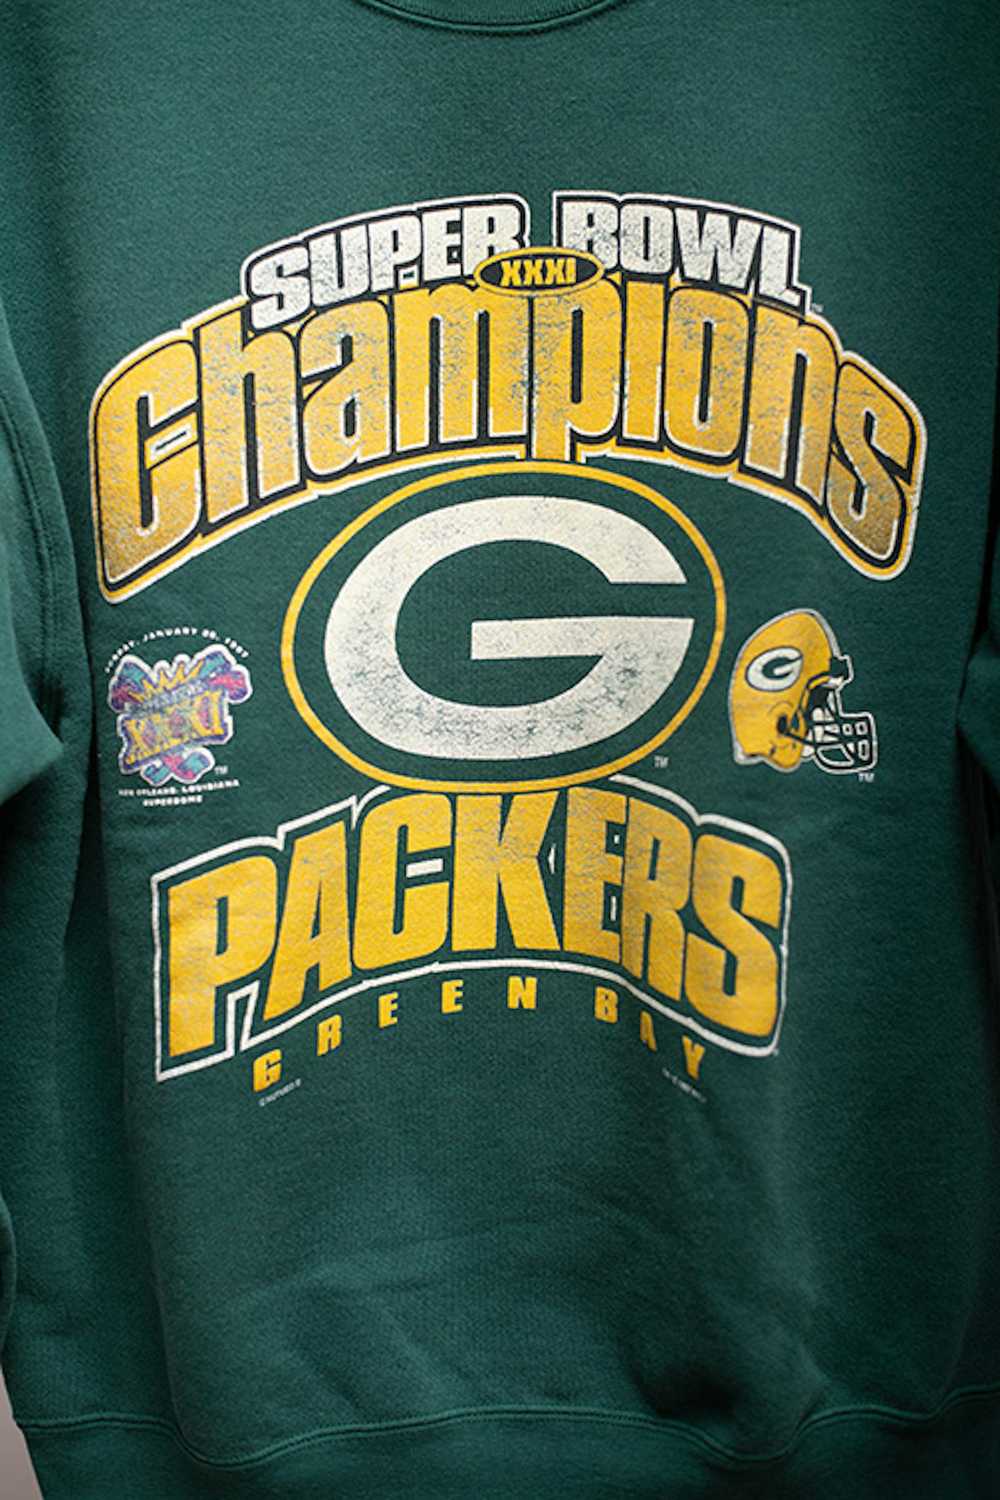 Sportswear Green Bay Packers - image 2